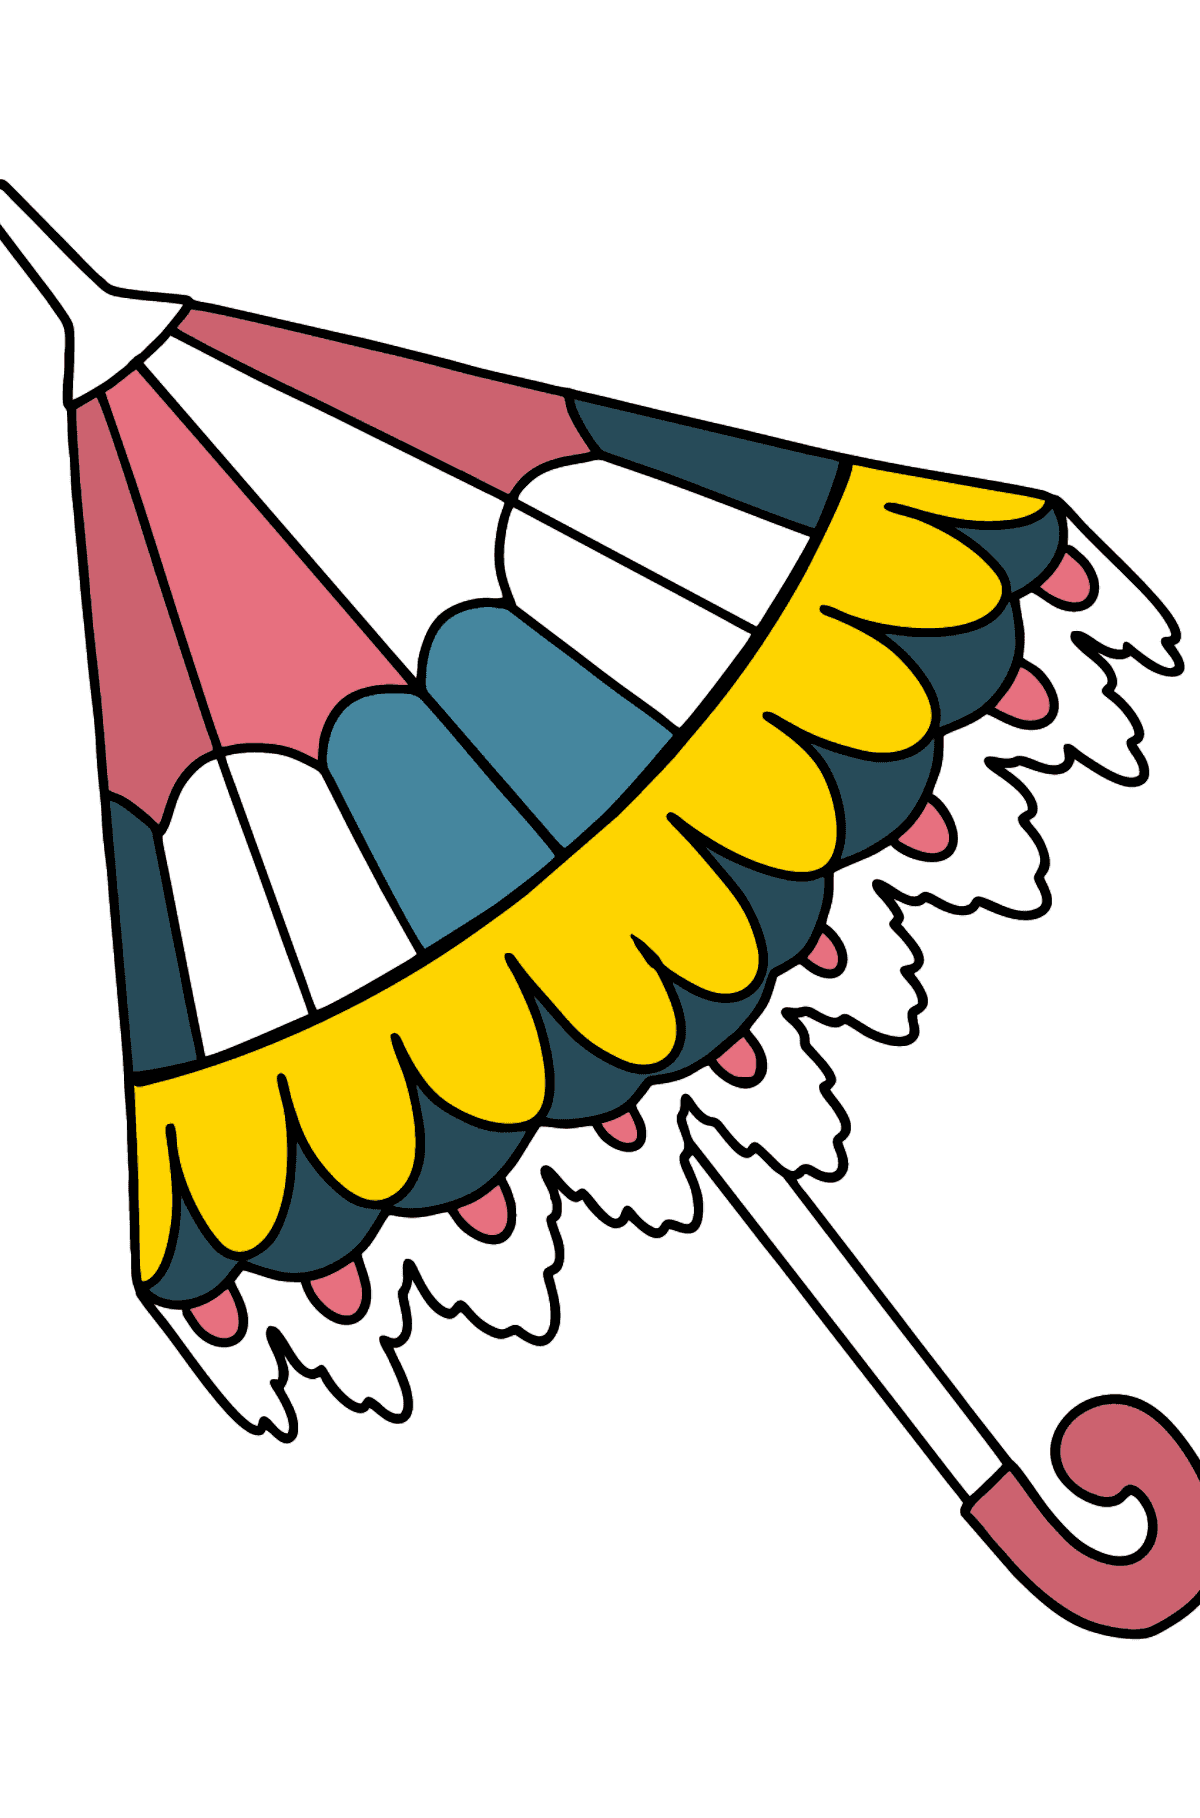 Guarda-chuva para colorir - Imagens para Colorir para Crianças